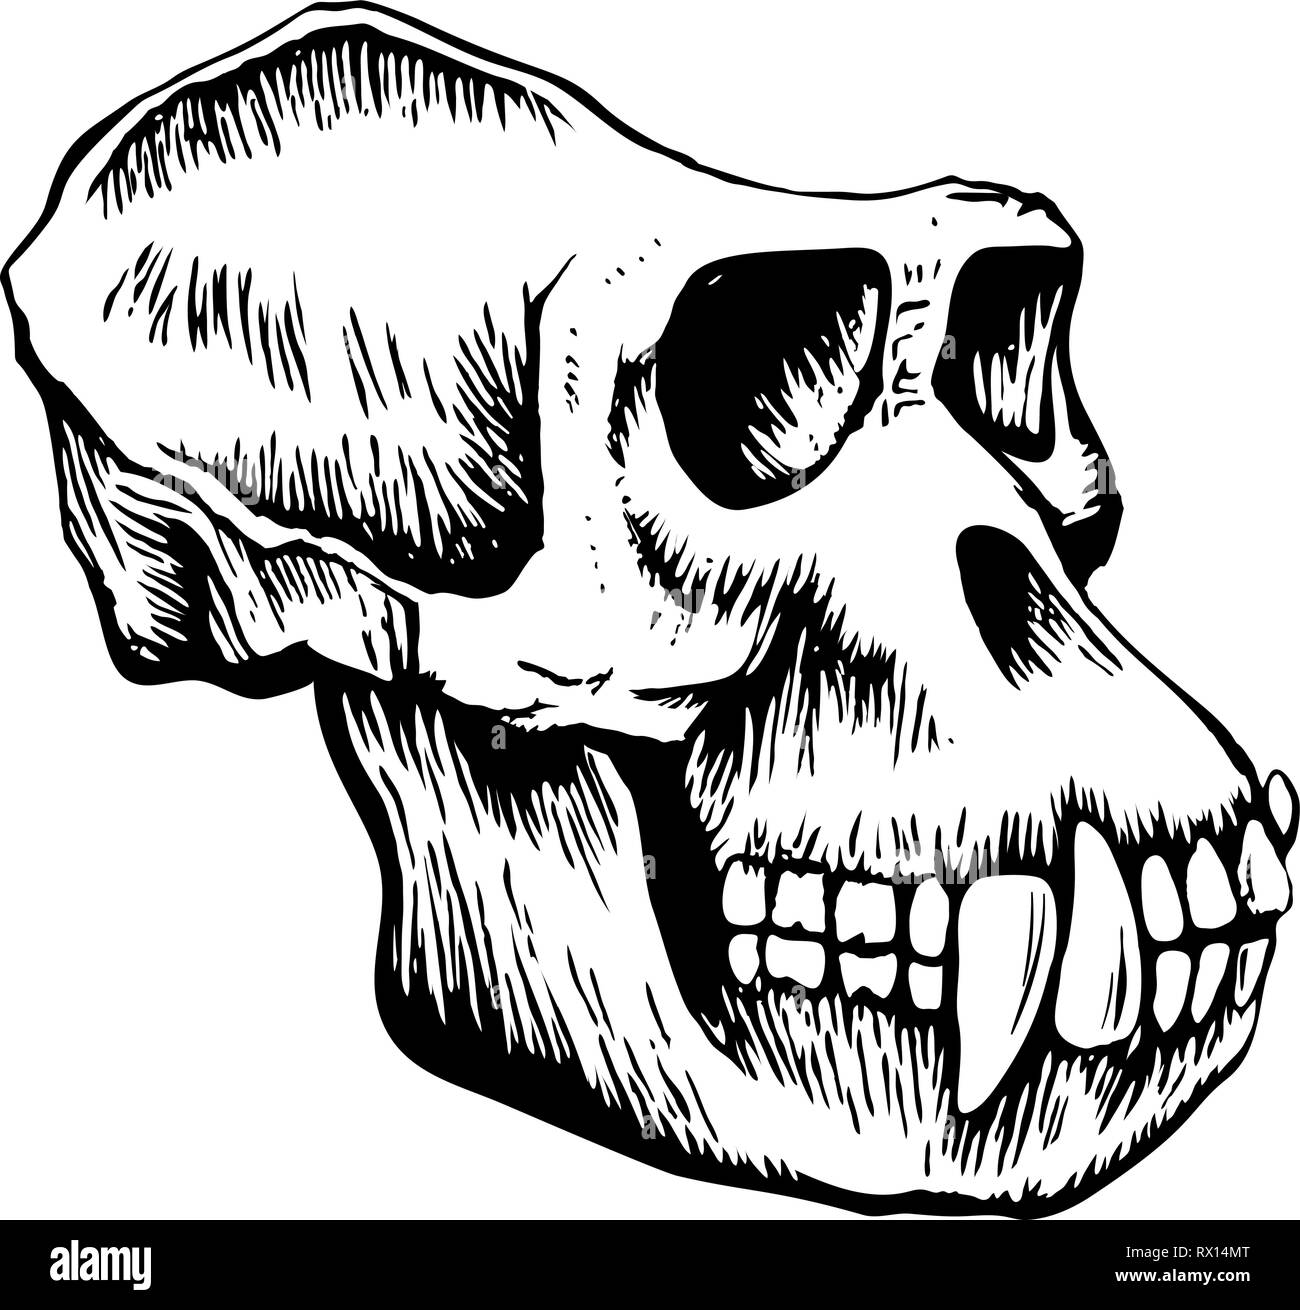 Croquis du crâne de singe Illustration de Vecteur